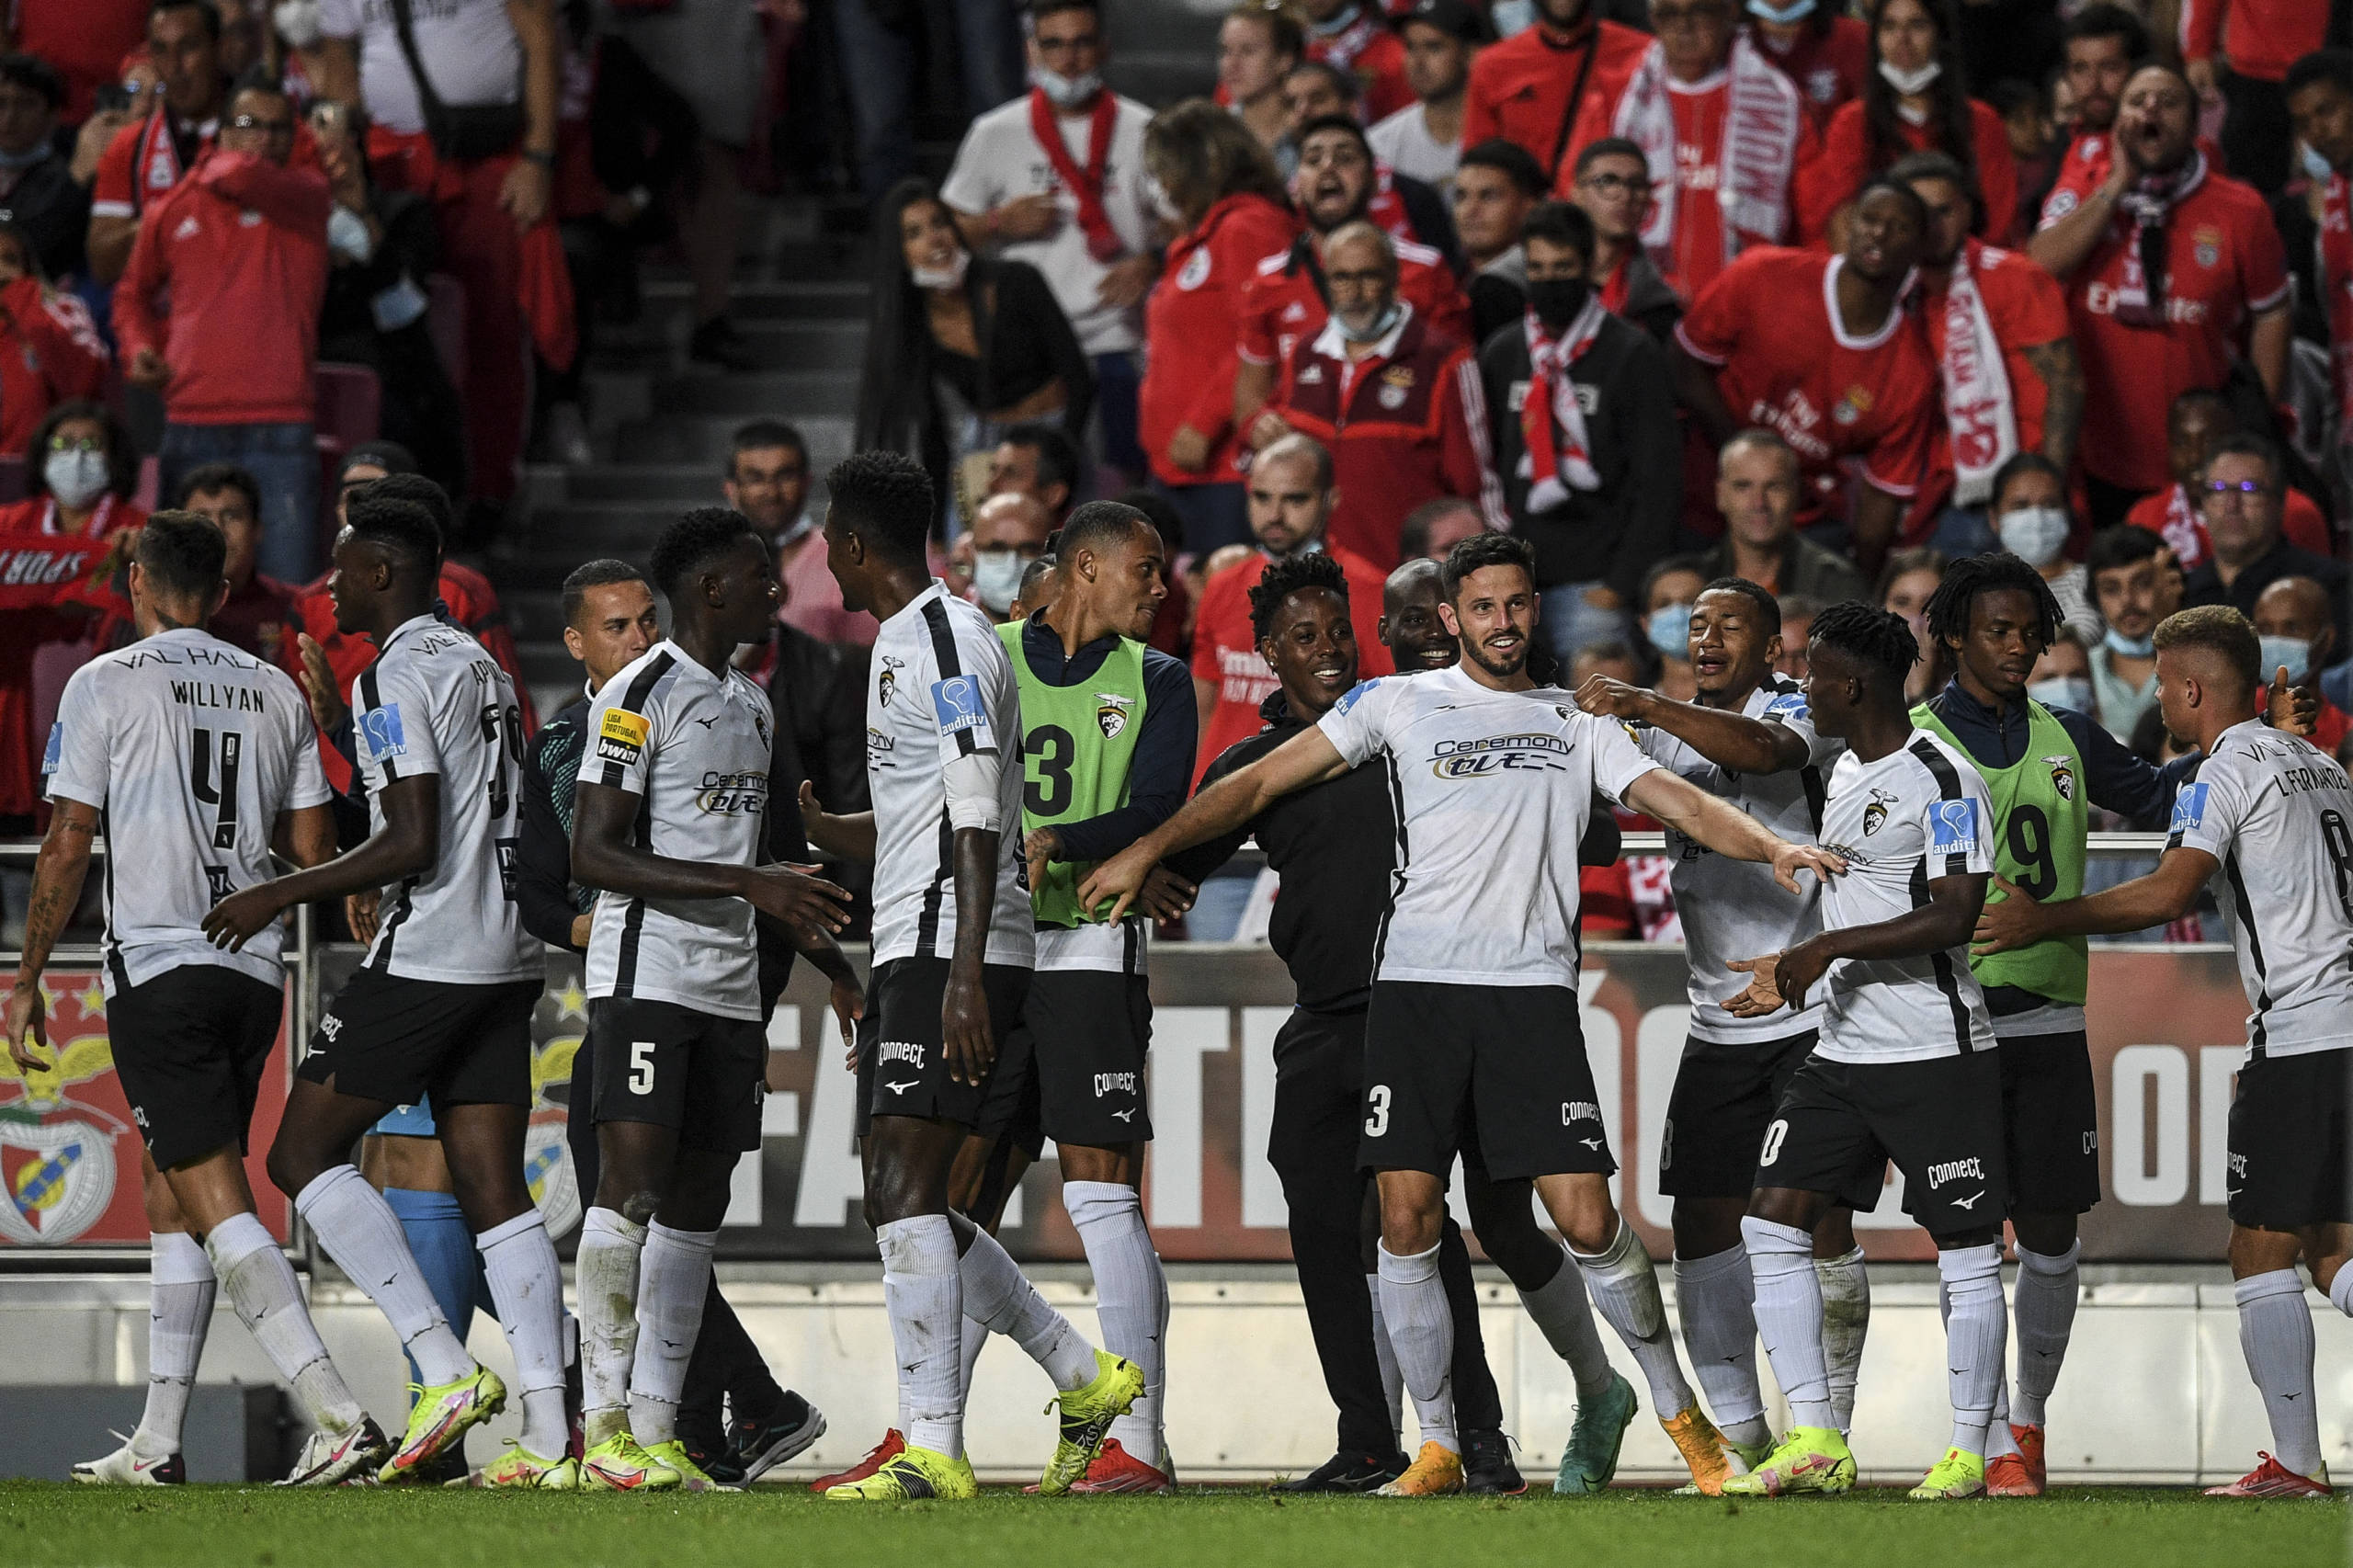 Benfica, the leader of the Portuguese championship, loses to Portimonense at the Estádio da Luz stadium.